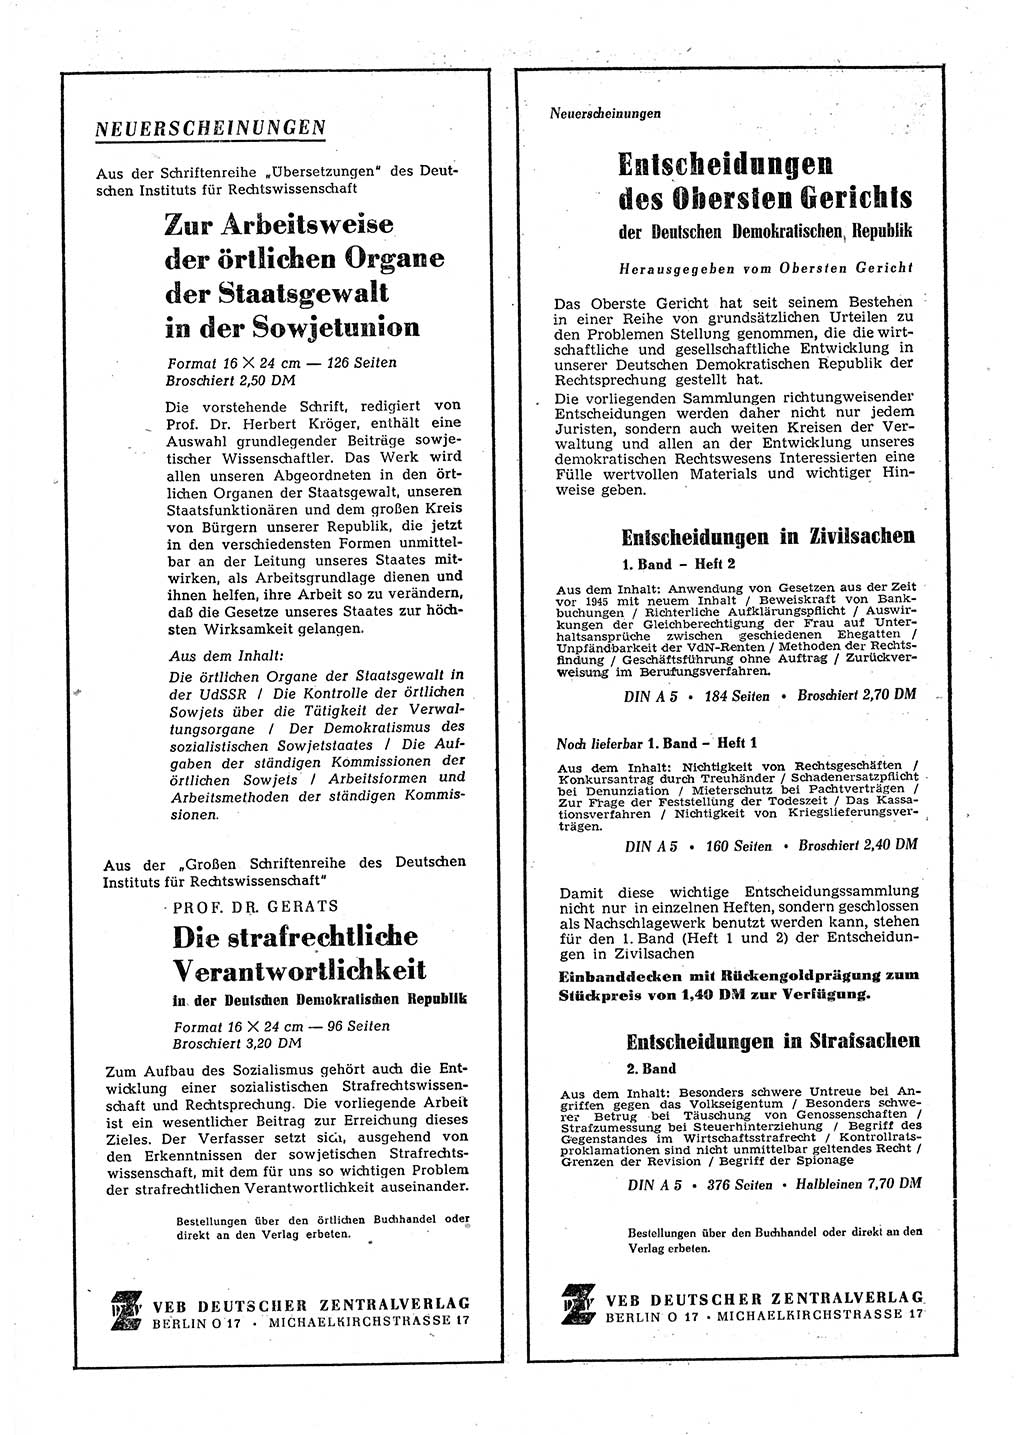 Gesetzblatt (GBl.) der Deutschen Demokratischen Republik (DDR) 1952, Seite 1346 (GBl. DDR 1952, S. 1346)